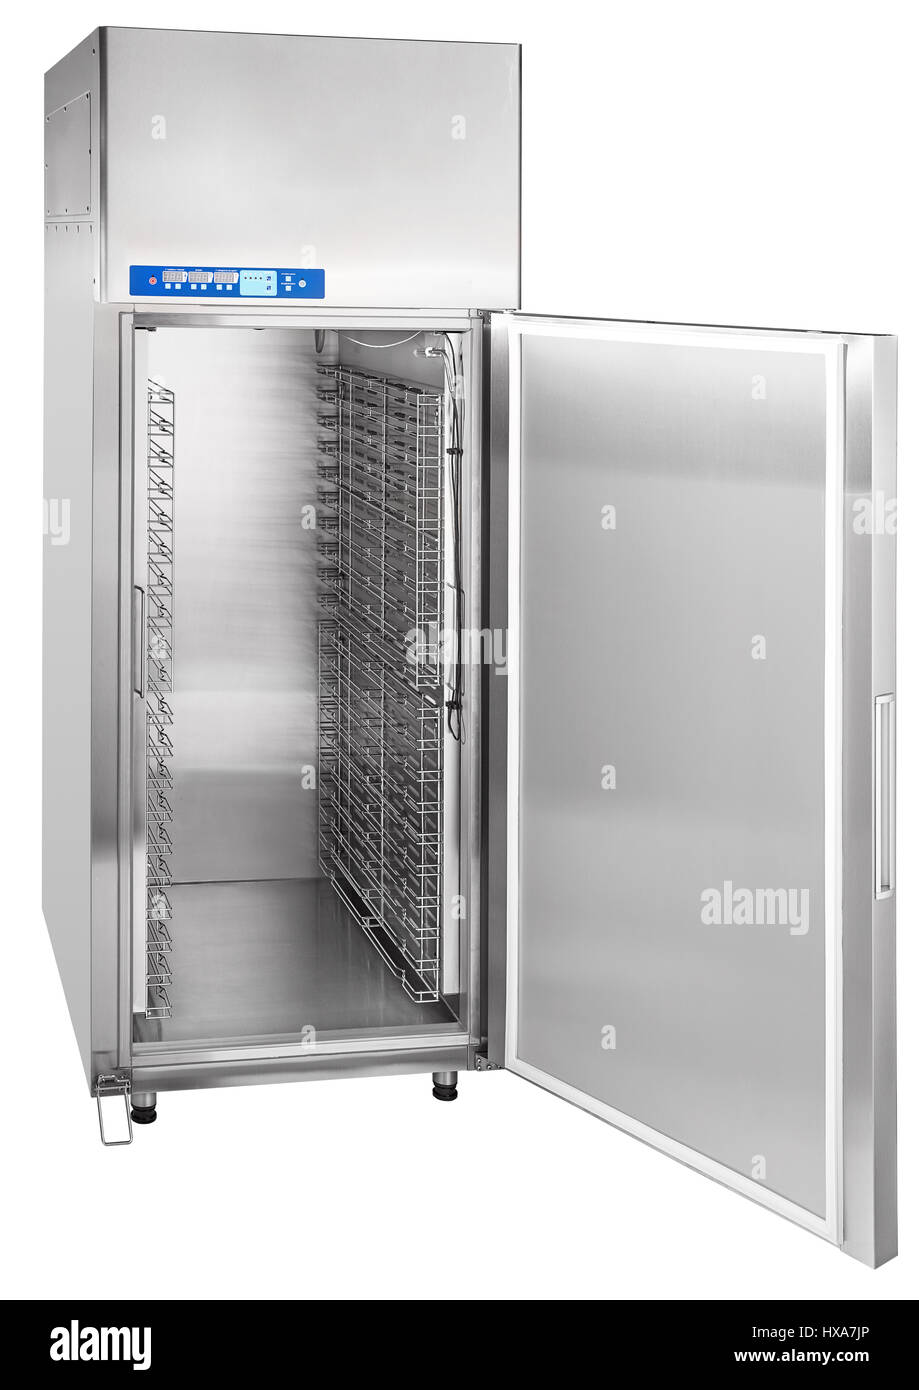 Industrie Kühlschrank für Cafés und Restaurants getrennt ich  Stockfotografie - Alamy